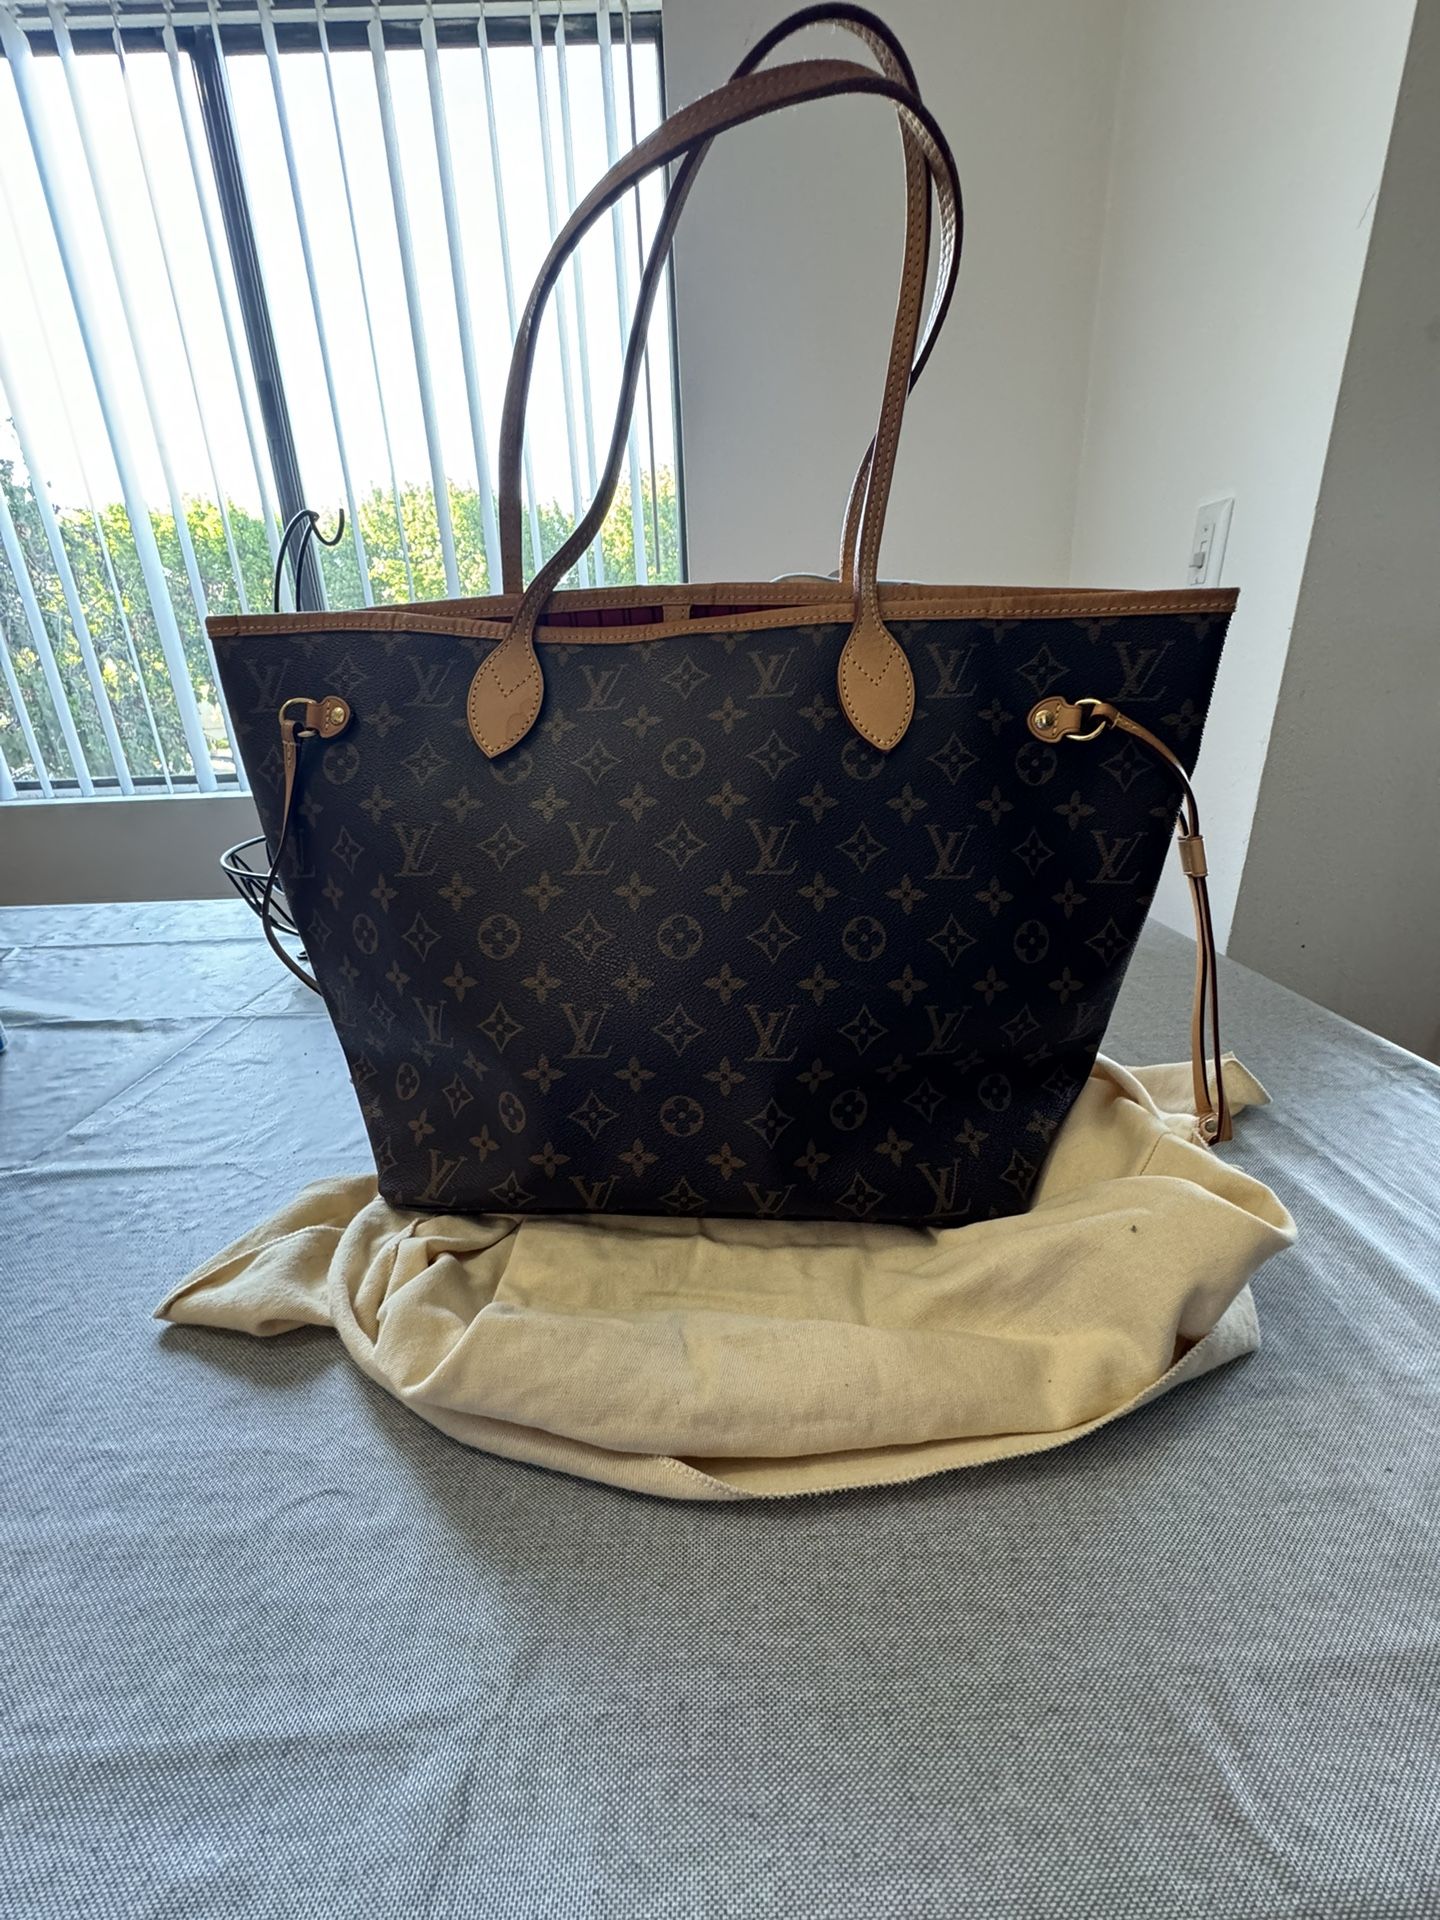 Louis Vuitton Woman’s Purse / Handbag